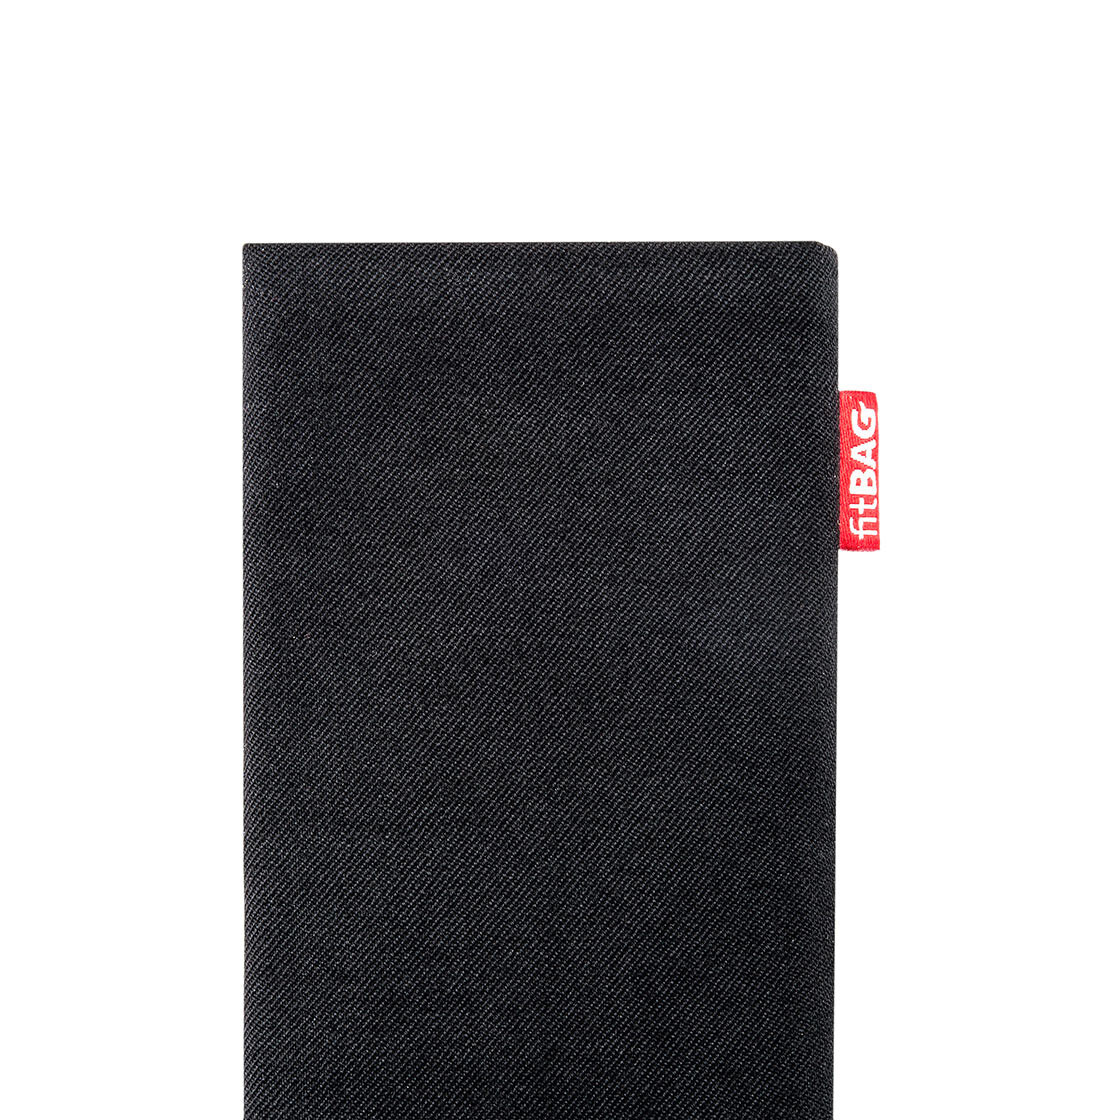 Made in Germany Hülle mit Reinigungsfunktion fitBAG Retro Schwarz Handytasche Tasche aus Cord-Stoff mit Microfaserinnenfutter für Apple iPhone 11 Pro Max